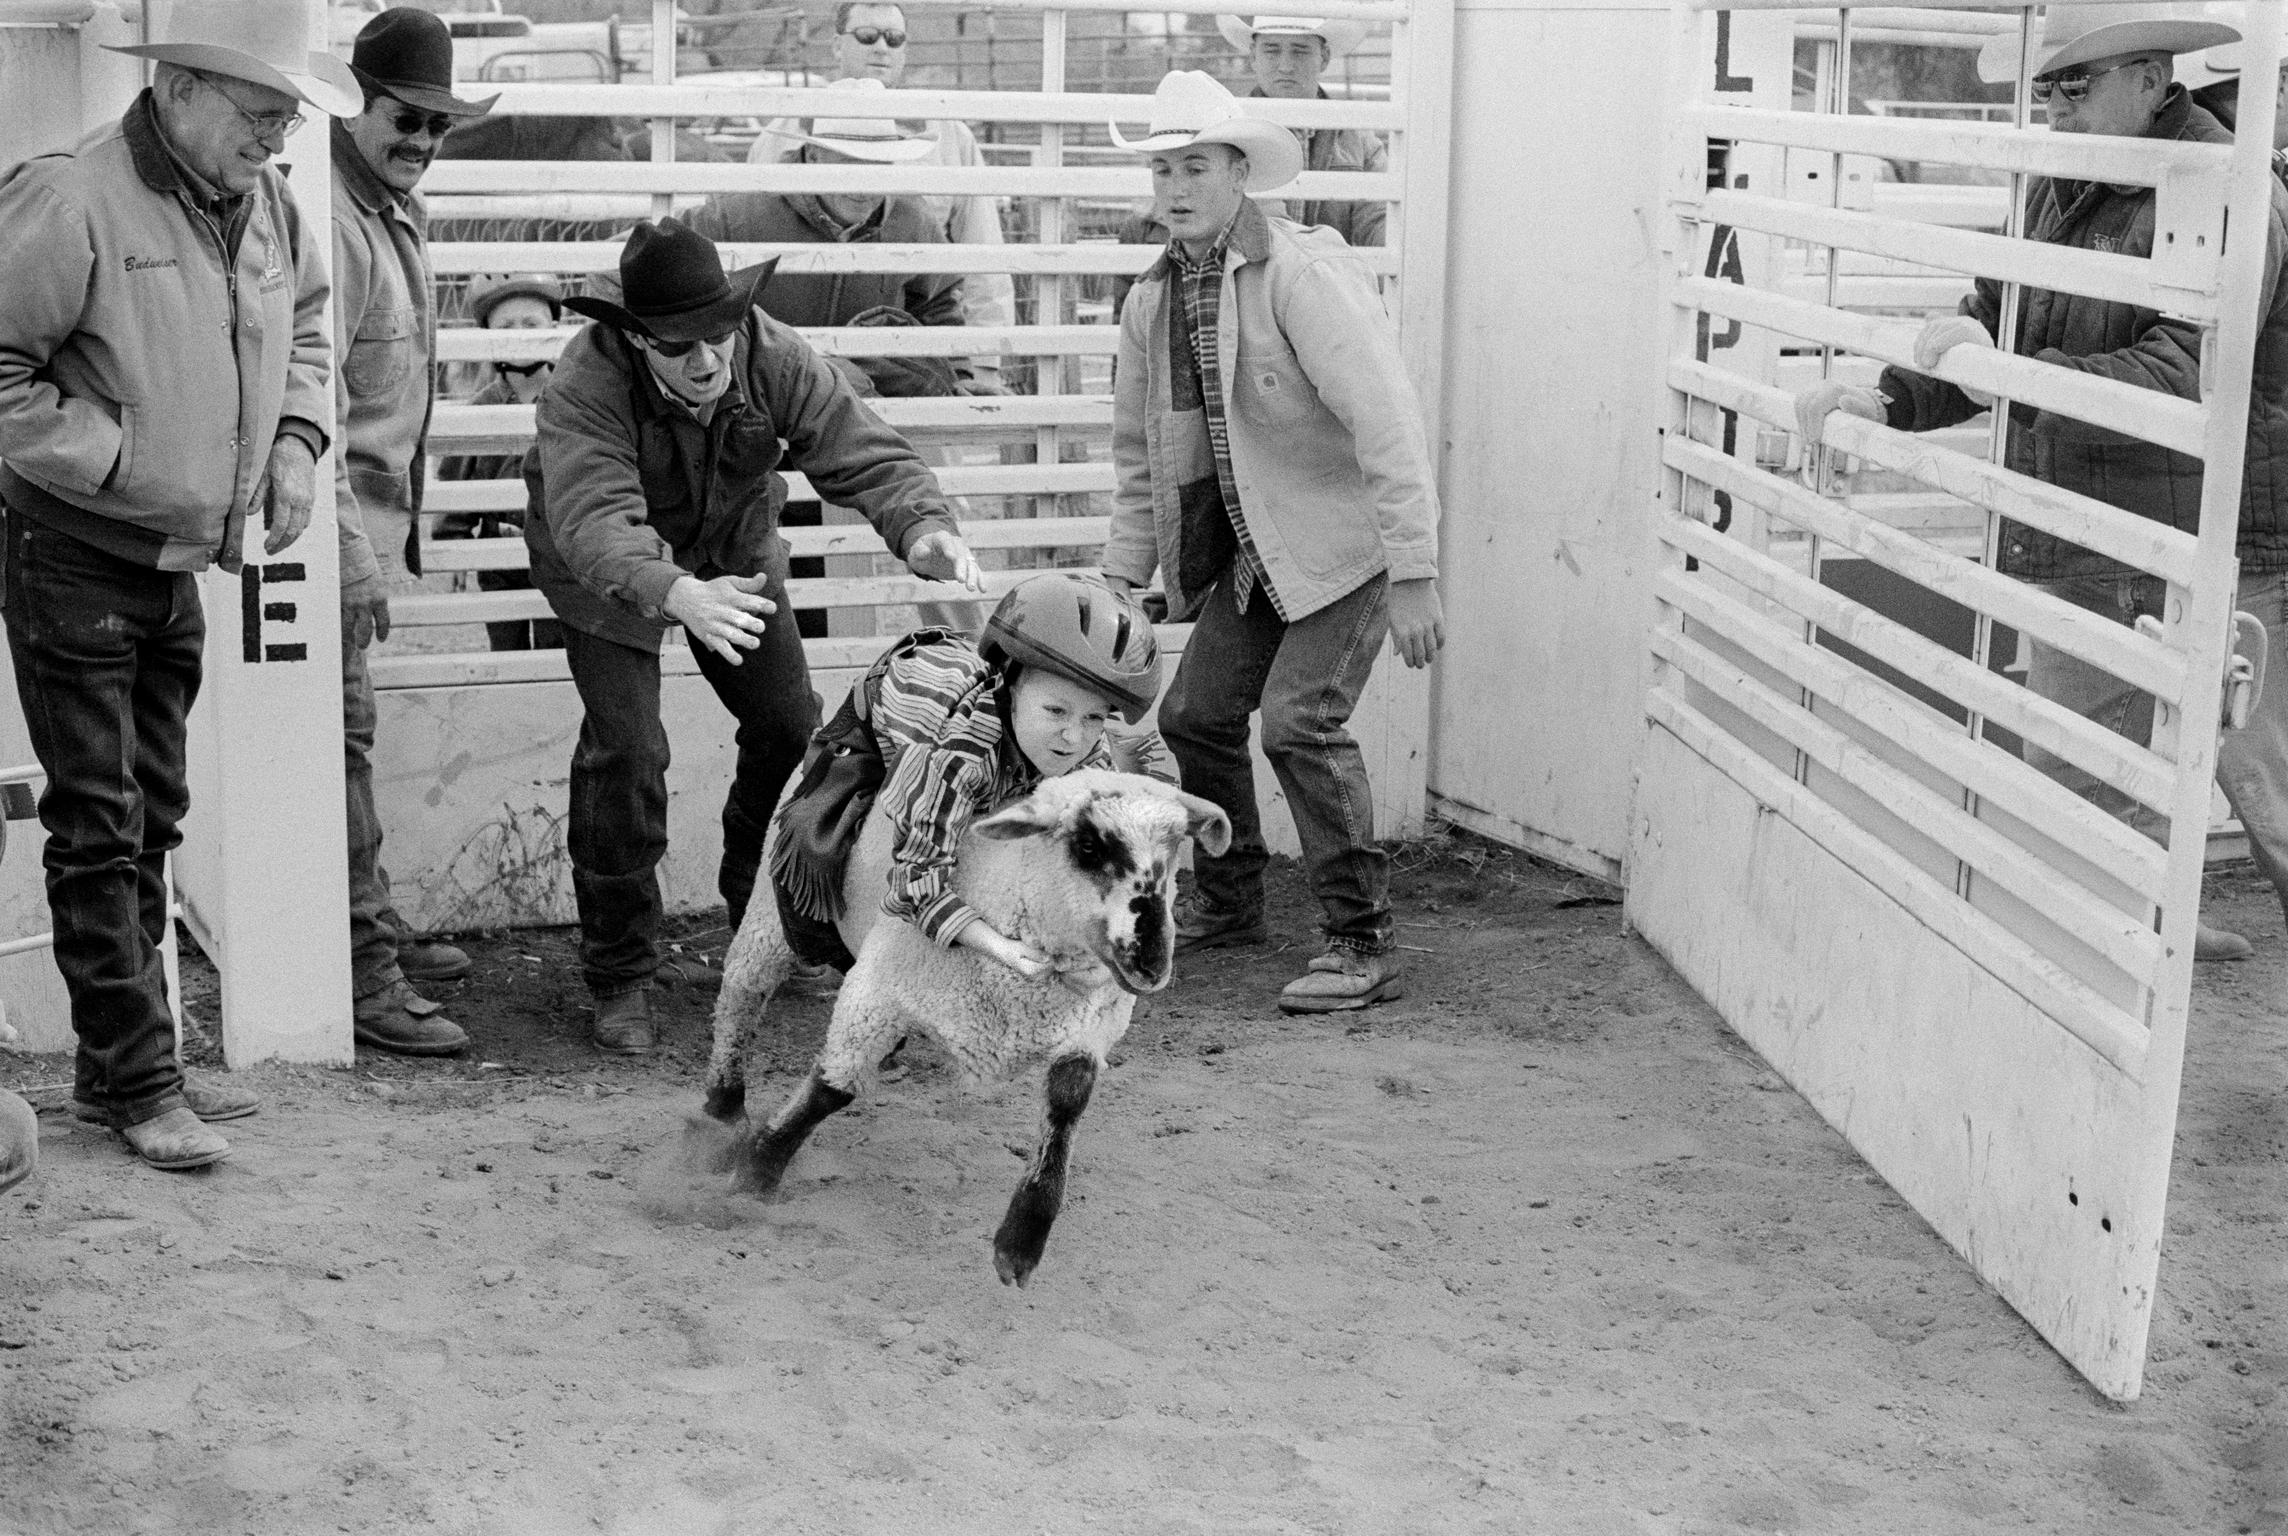 Very junior rodeo event during the Buckeye Senior Rodeo. Buckeye,  Arizona USA